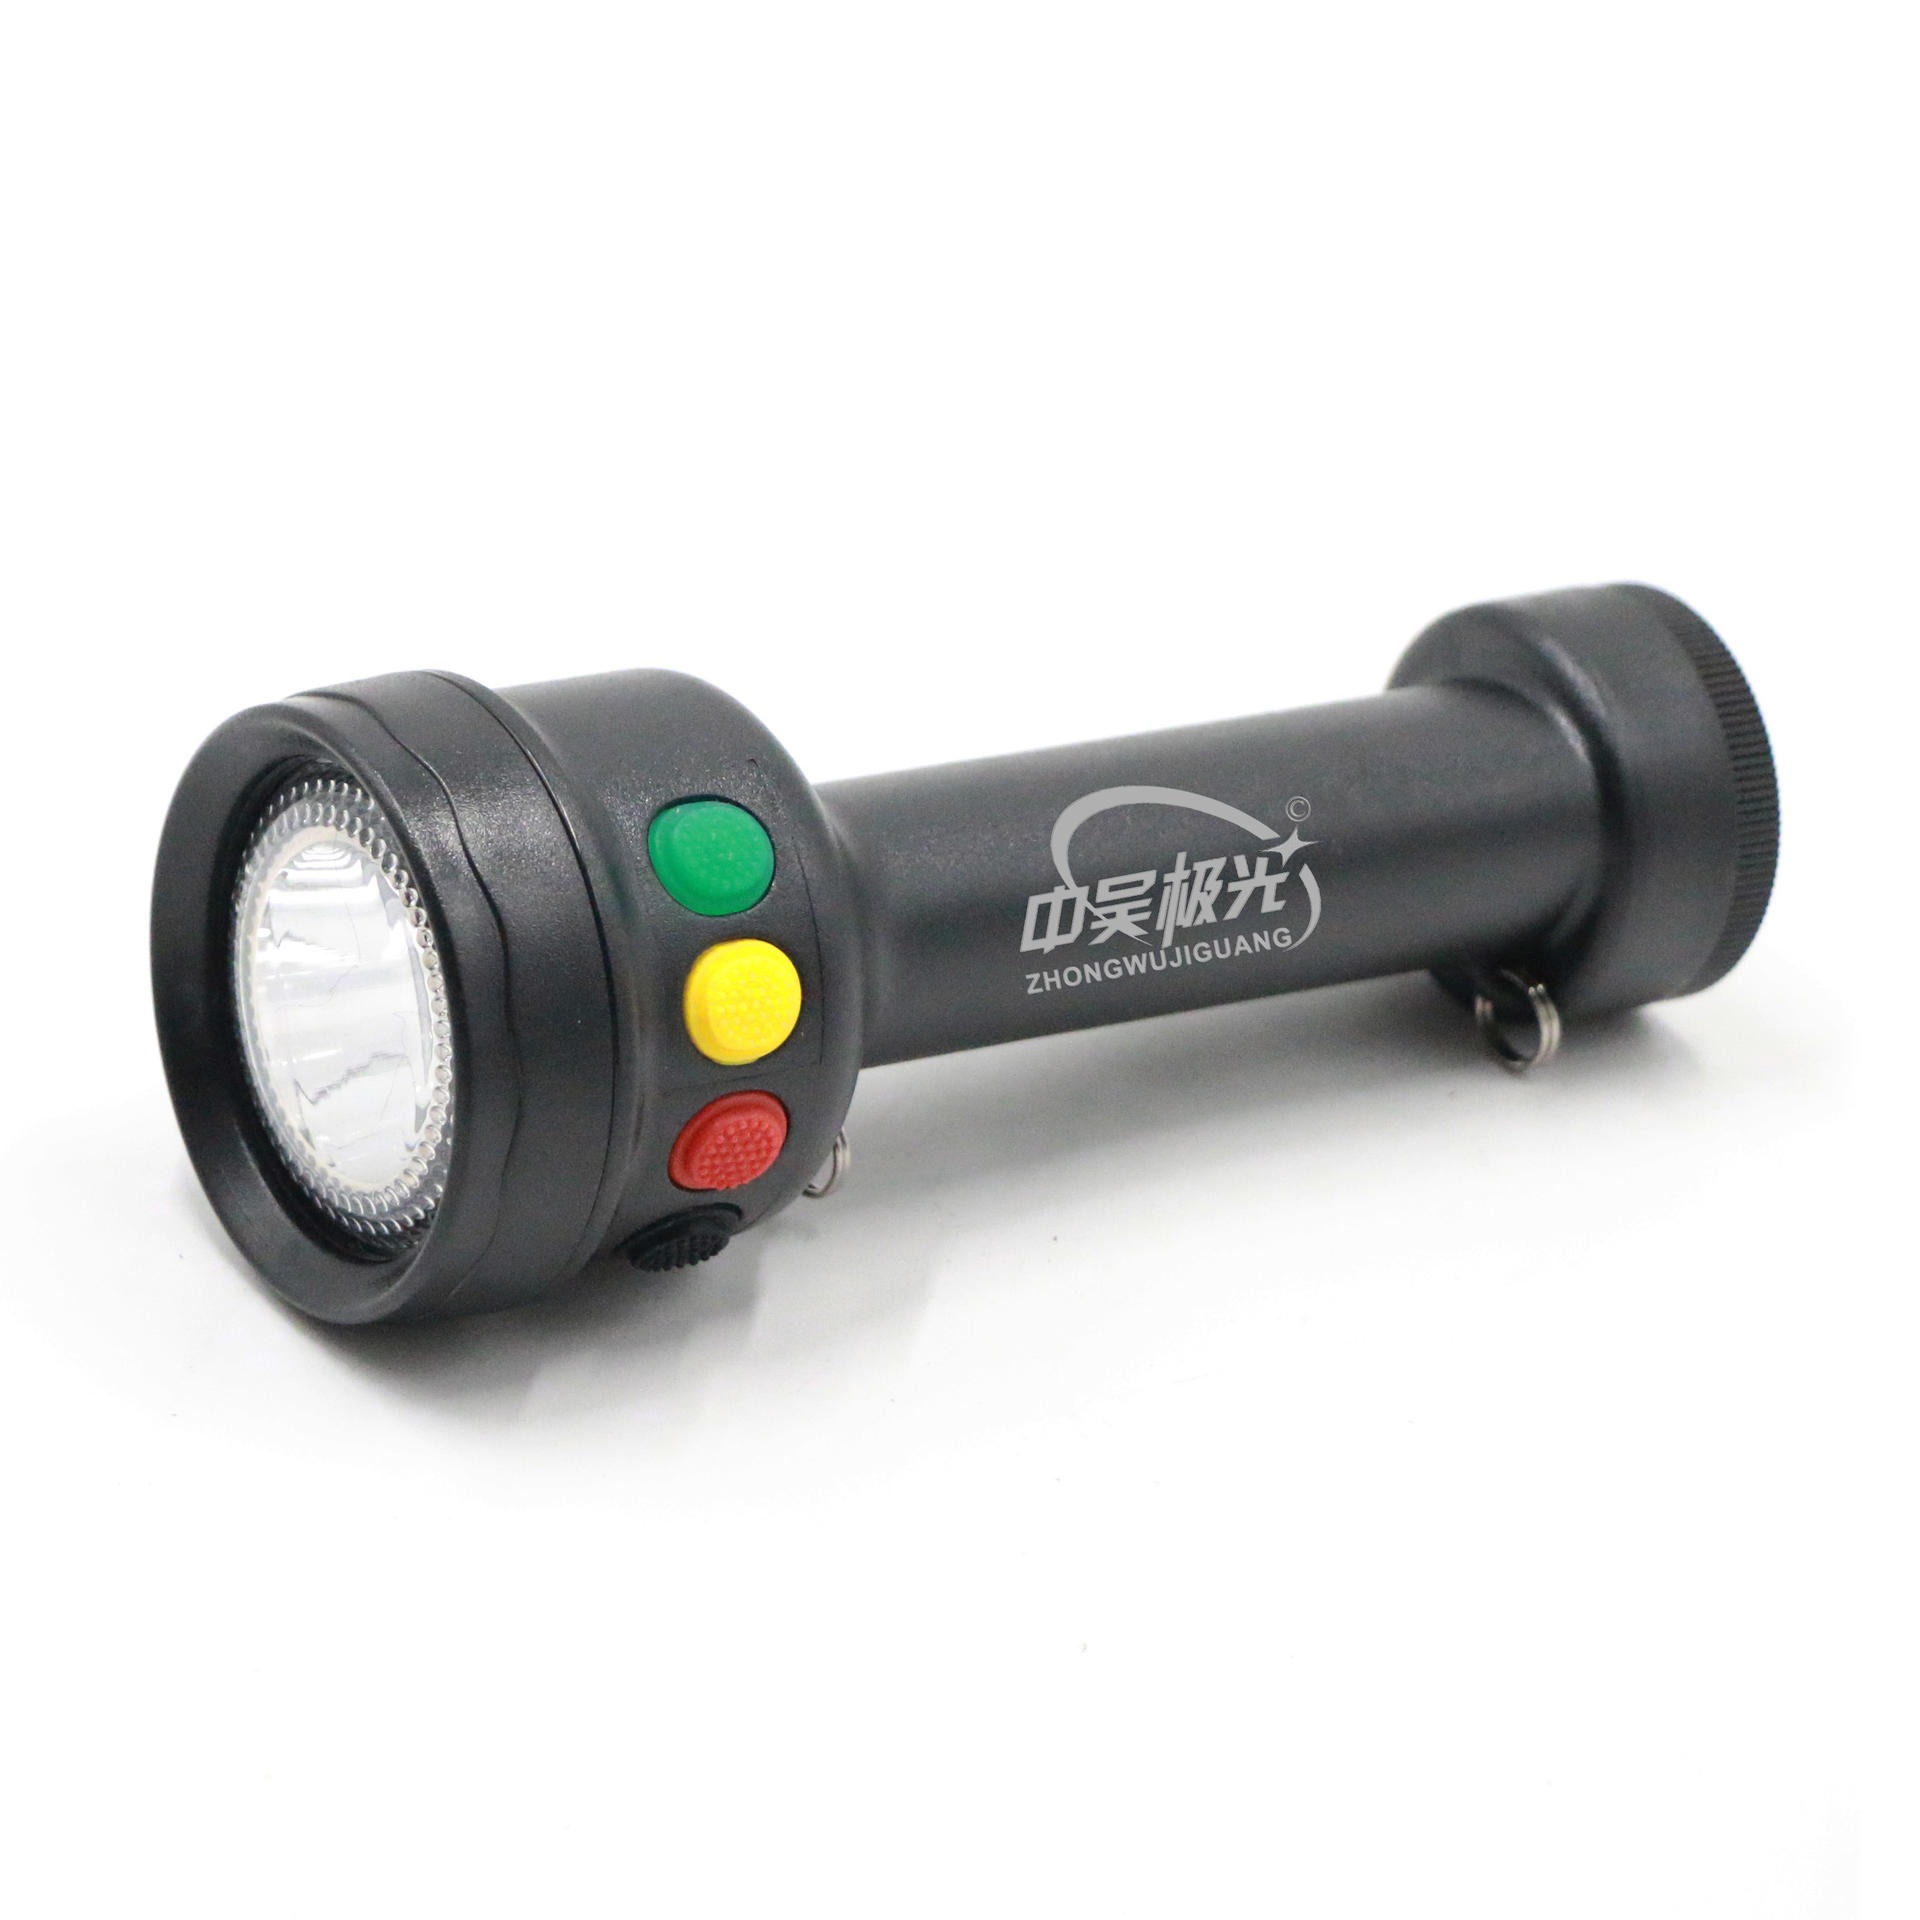 LED信号灯 多功能袖珍信号手电筒 防水户外安全警示灯 LED指示灯具 BJG-JW7510图片